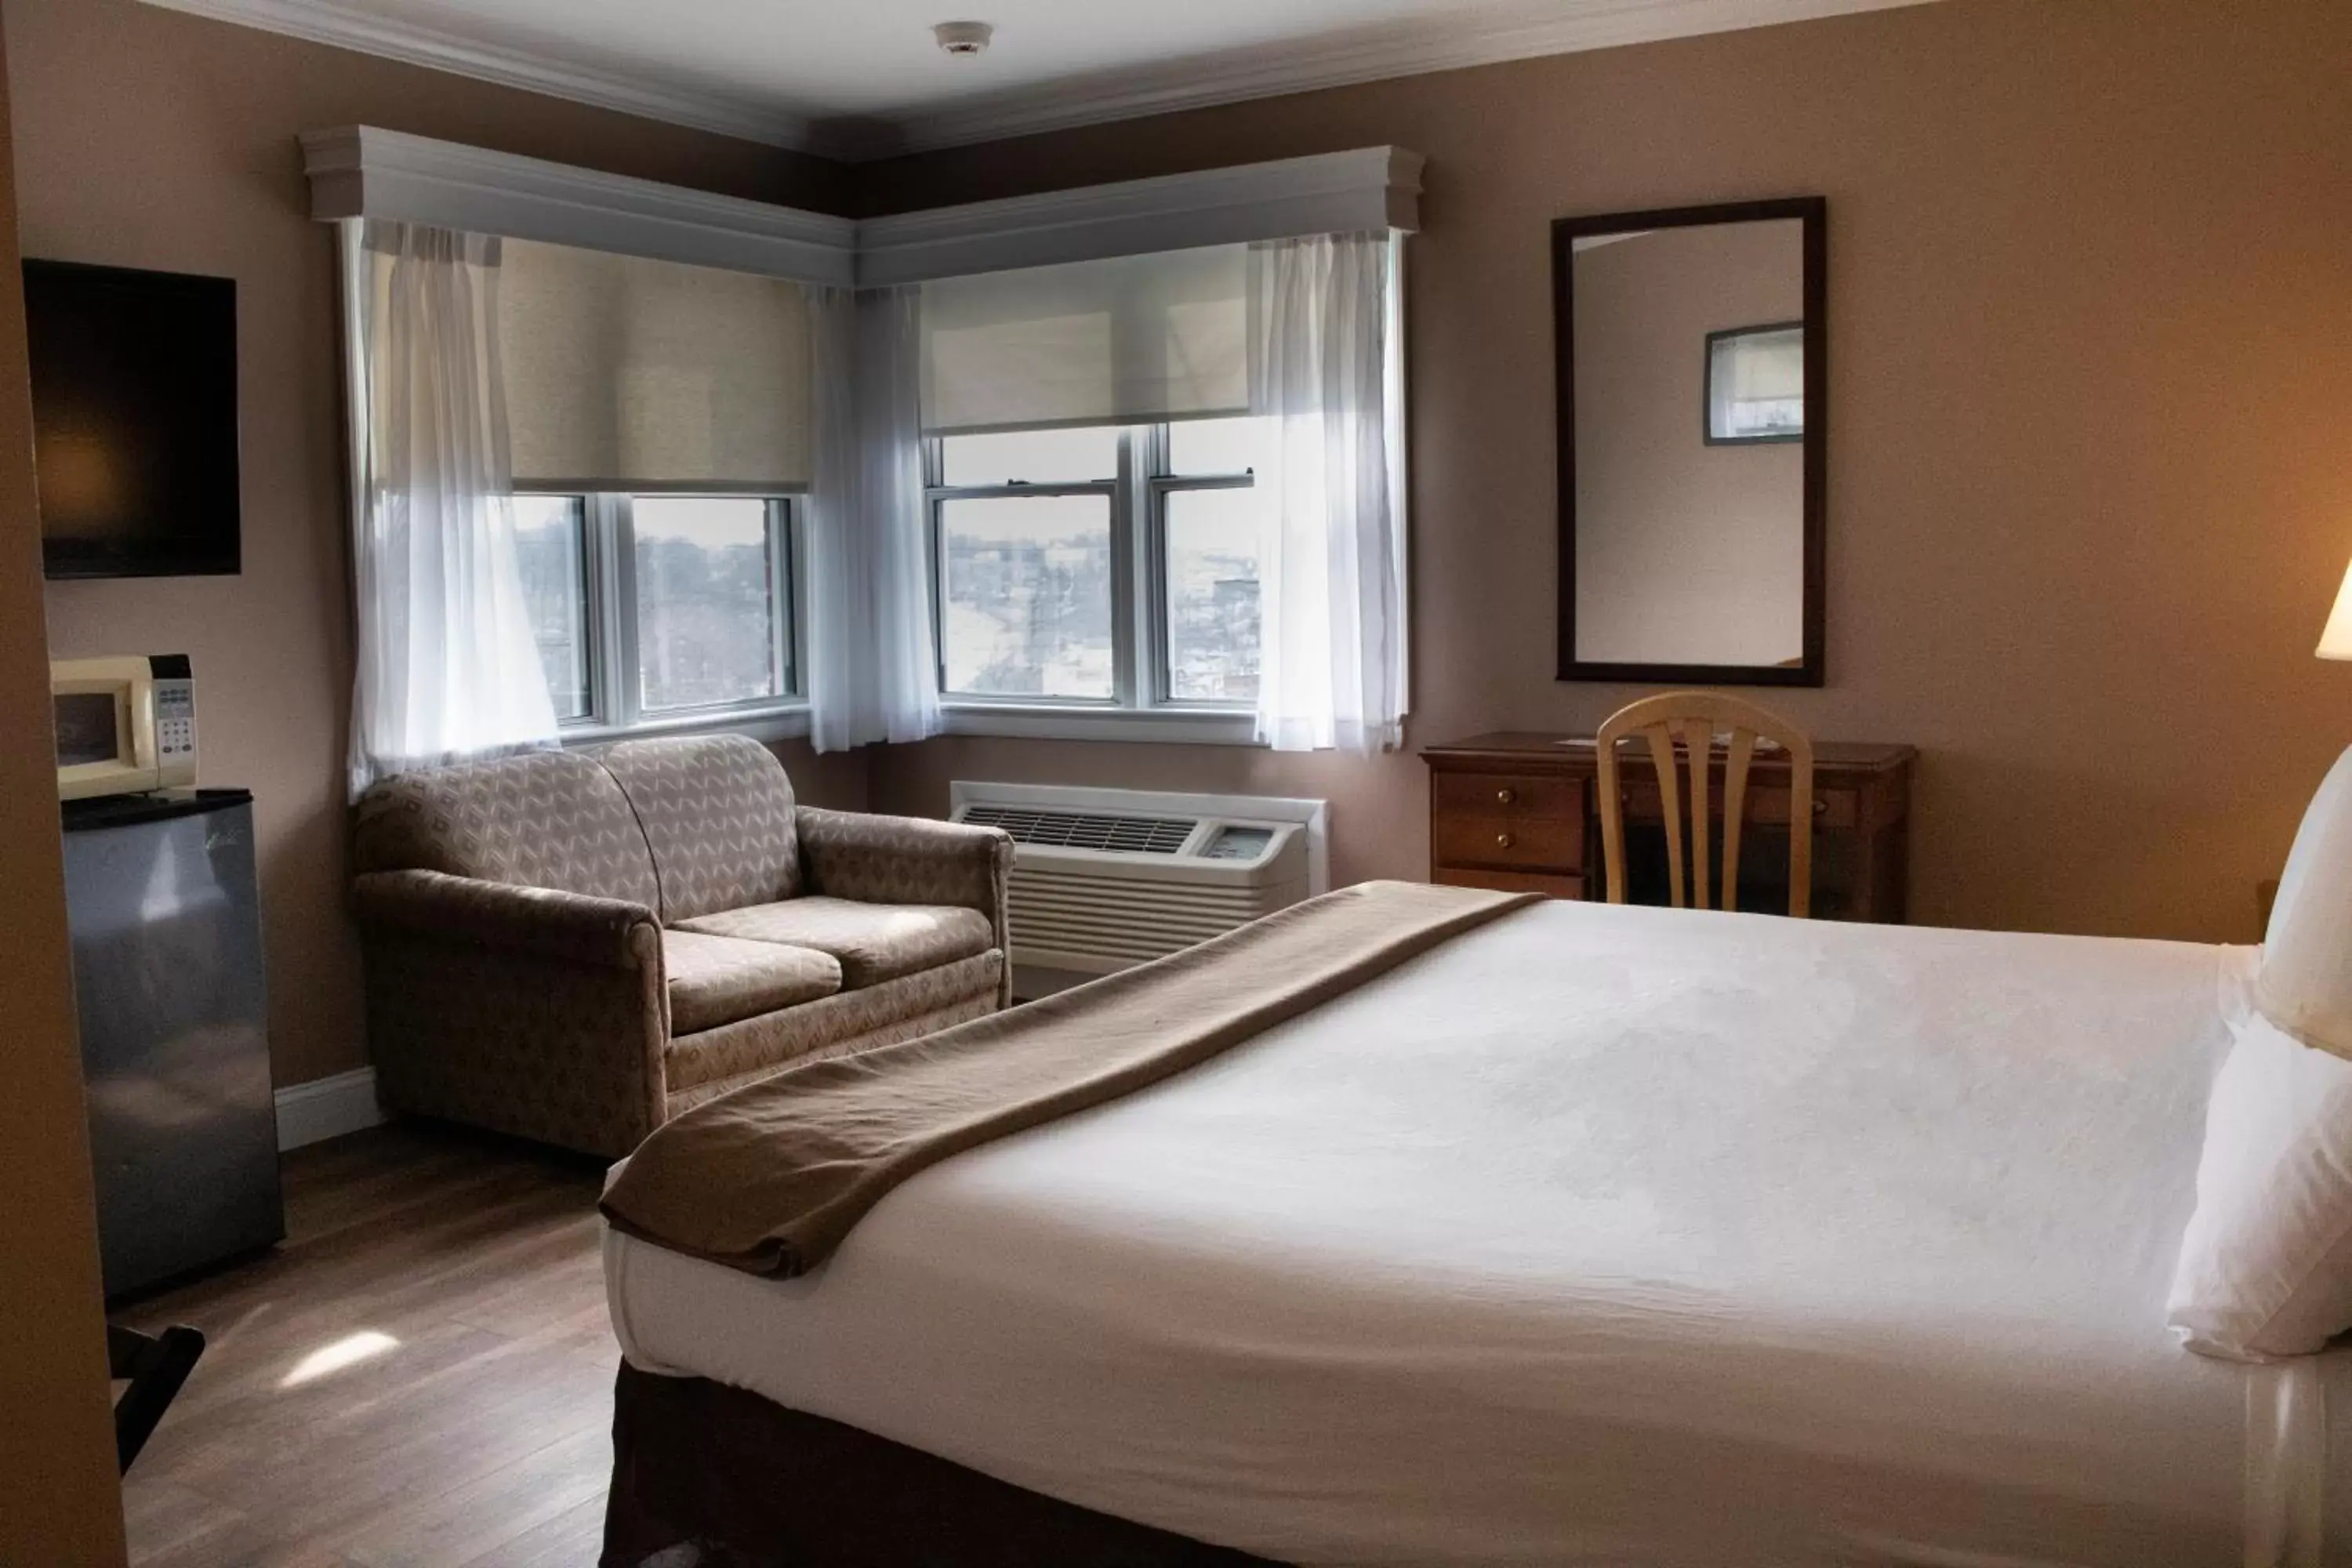 Bedroom in Inn on the Hudson